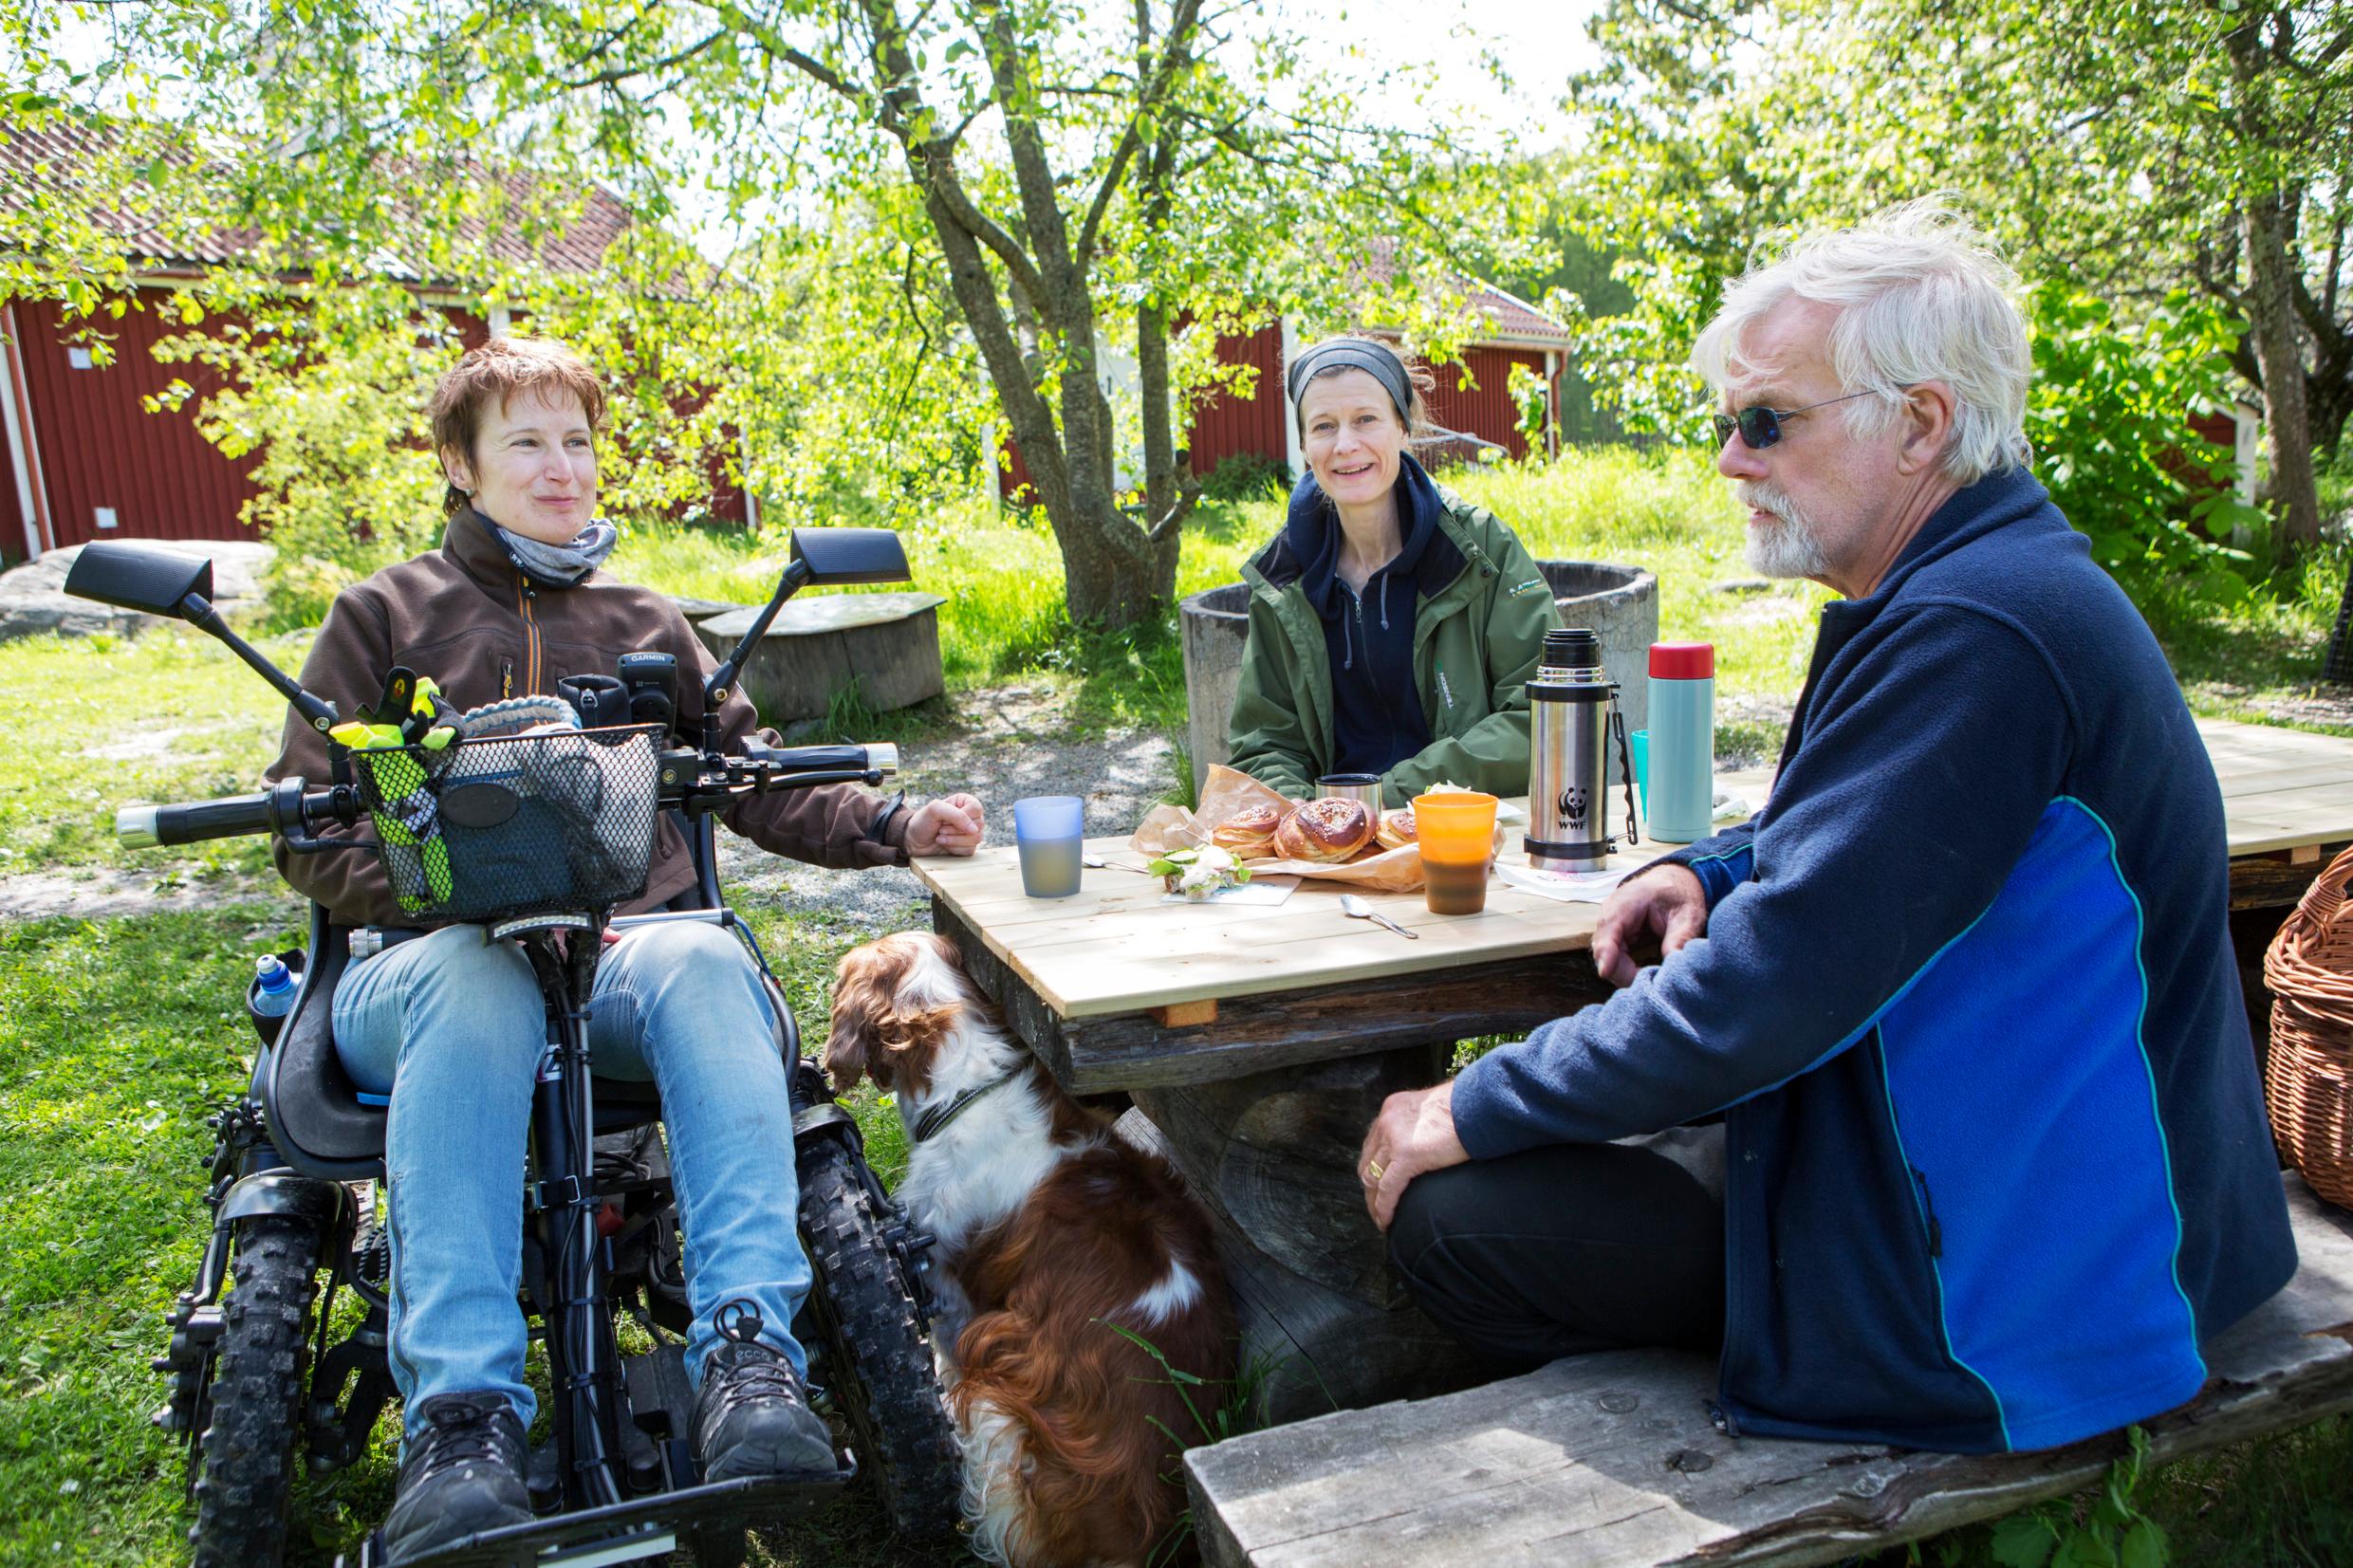 Друзья пьют кофе на природе, один из иних в инвалидной коляске